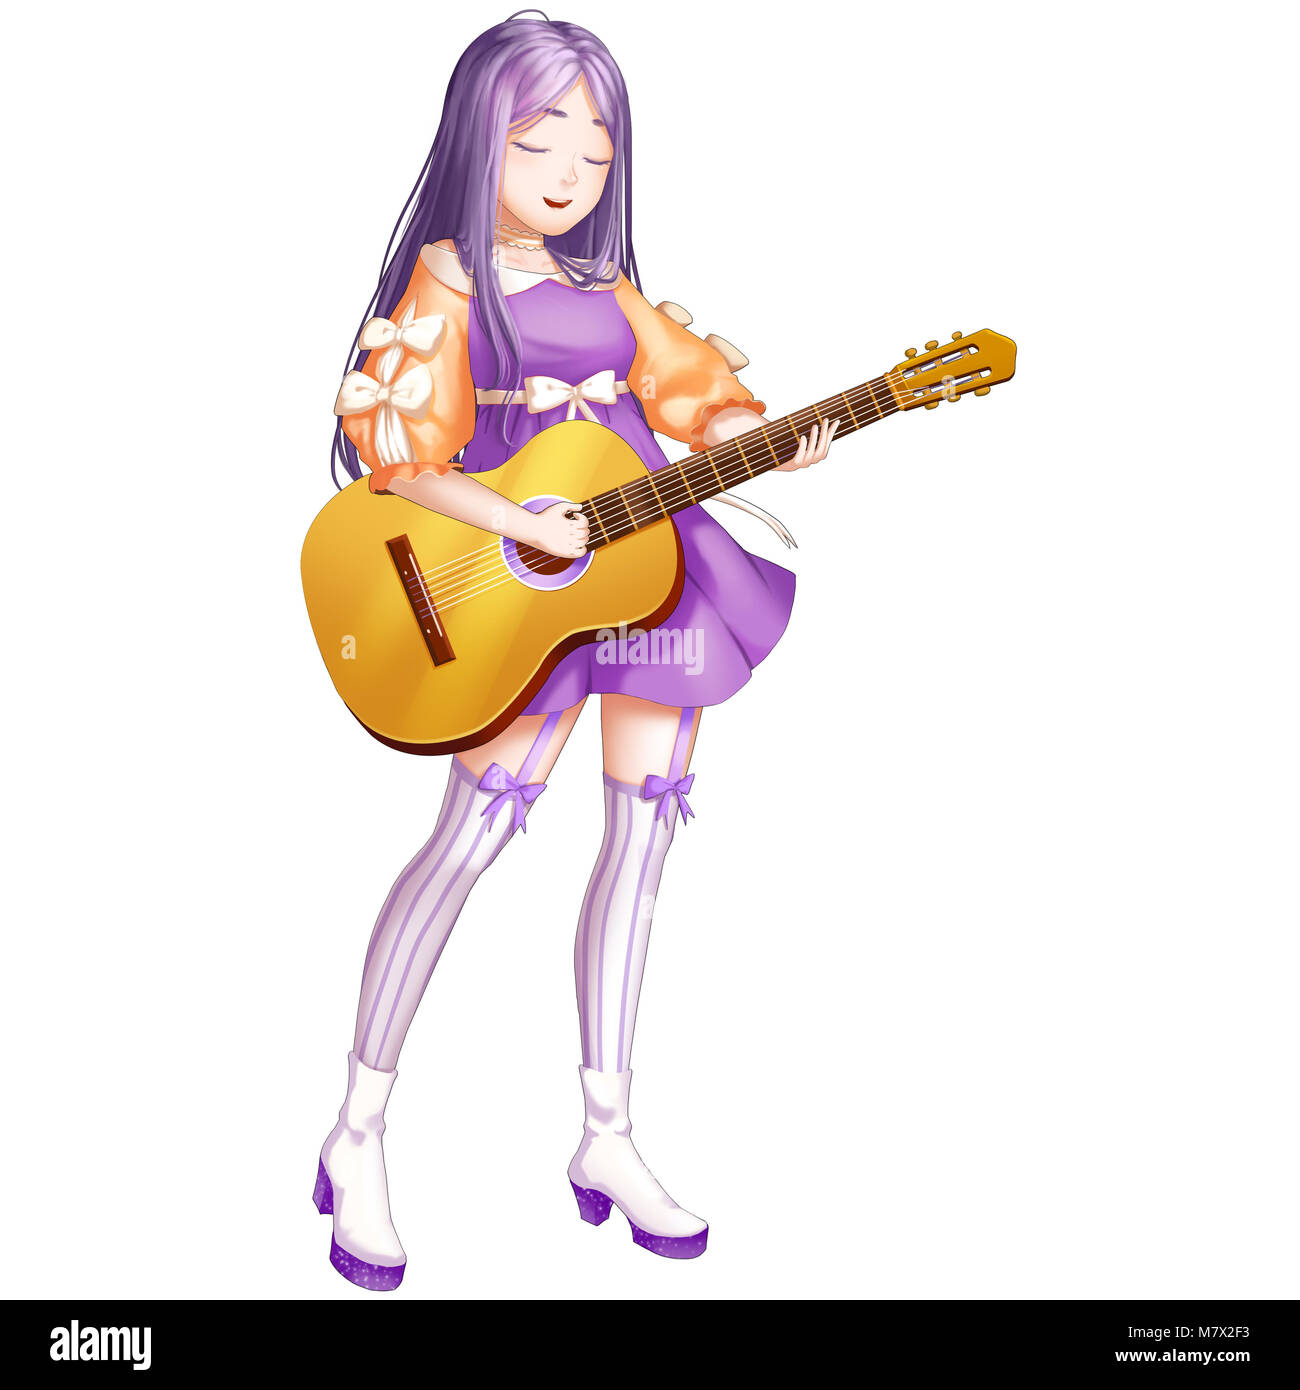 Musica per chitarra ragazza con anime e stile cartoon. Lei è una super star! Video del gioco Digital CG Artwork, concetto illustrazione, realistici in stile cartone animato Foto Stock